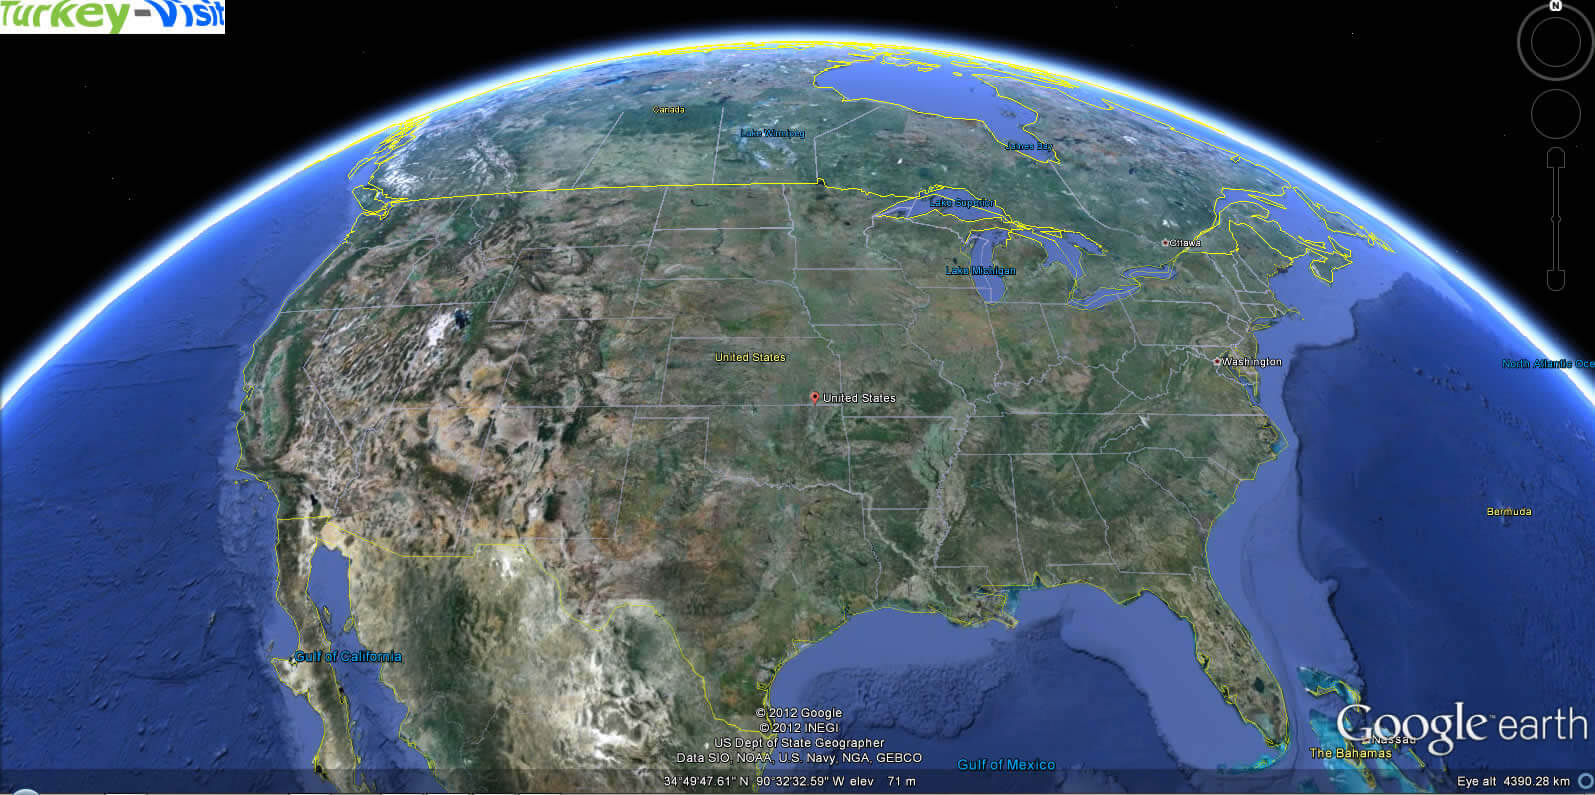 United States Map Globe